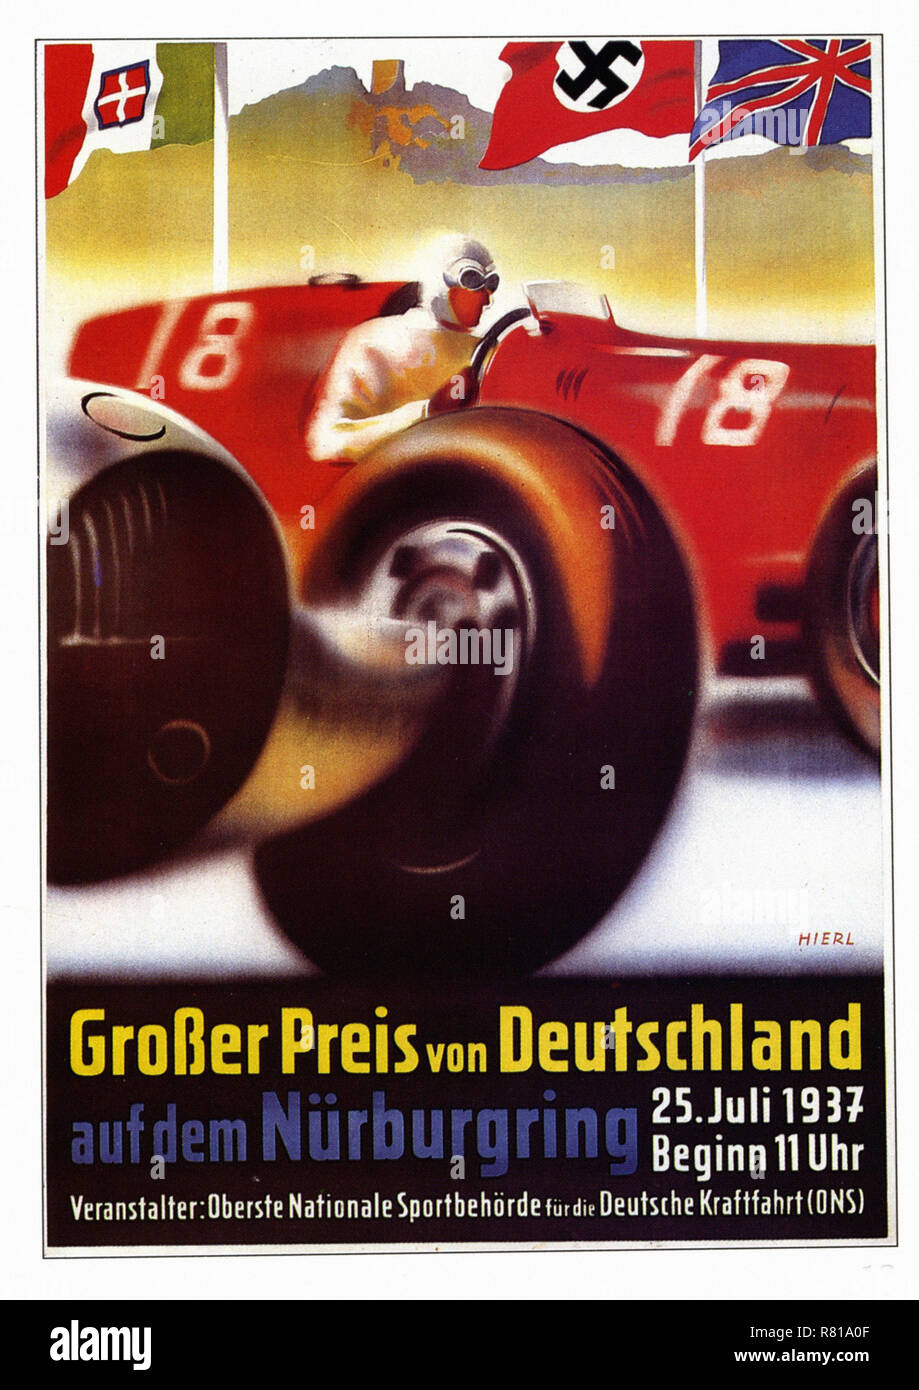 Grosser Preis Von Deutschland 1937 - Vintage car's advertising poster Stock Photo